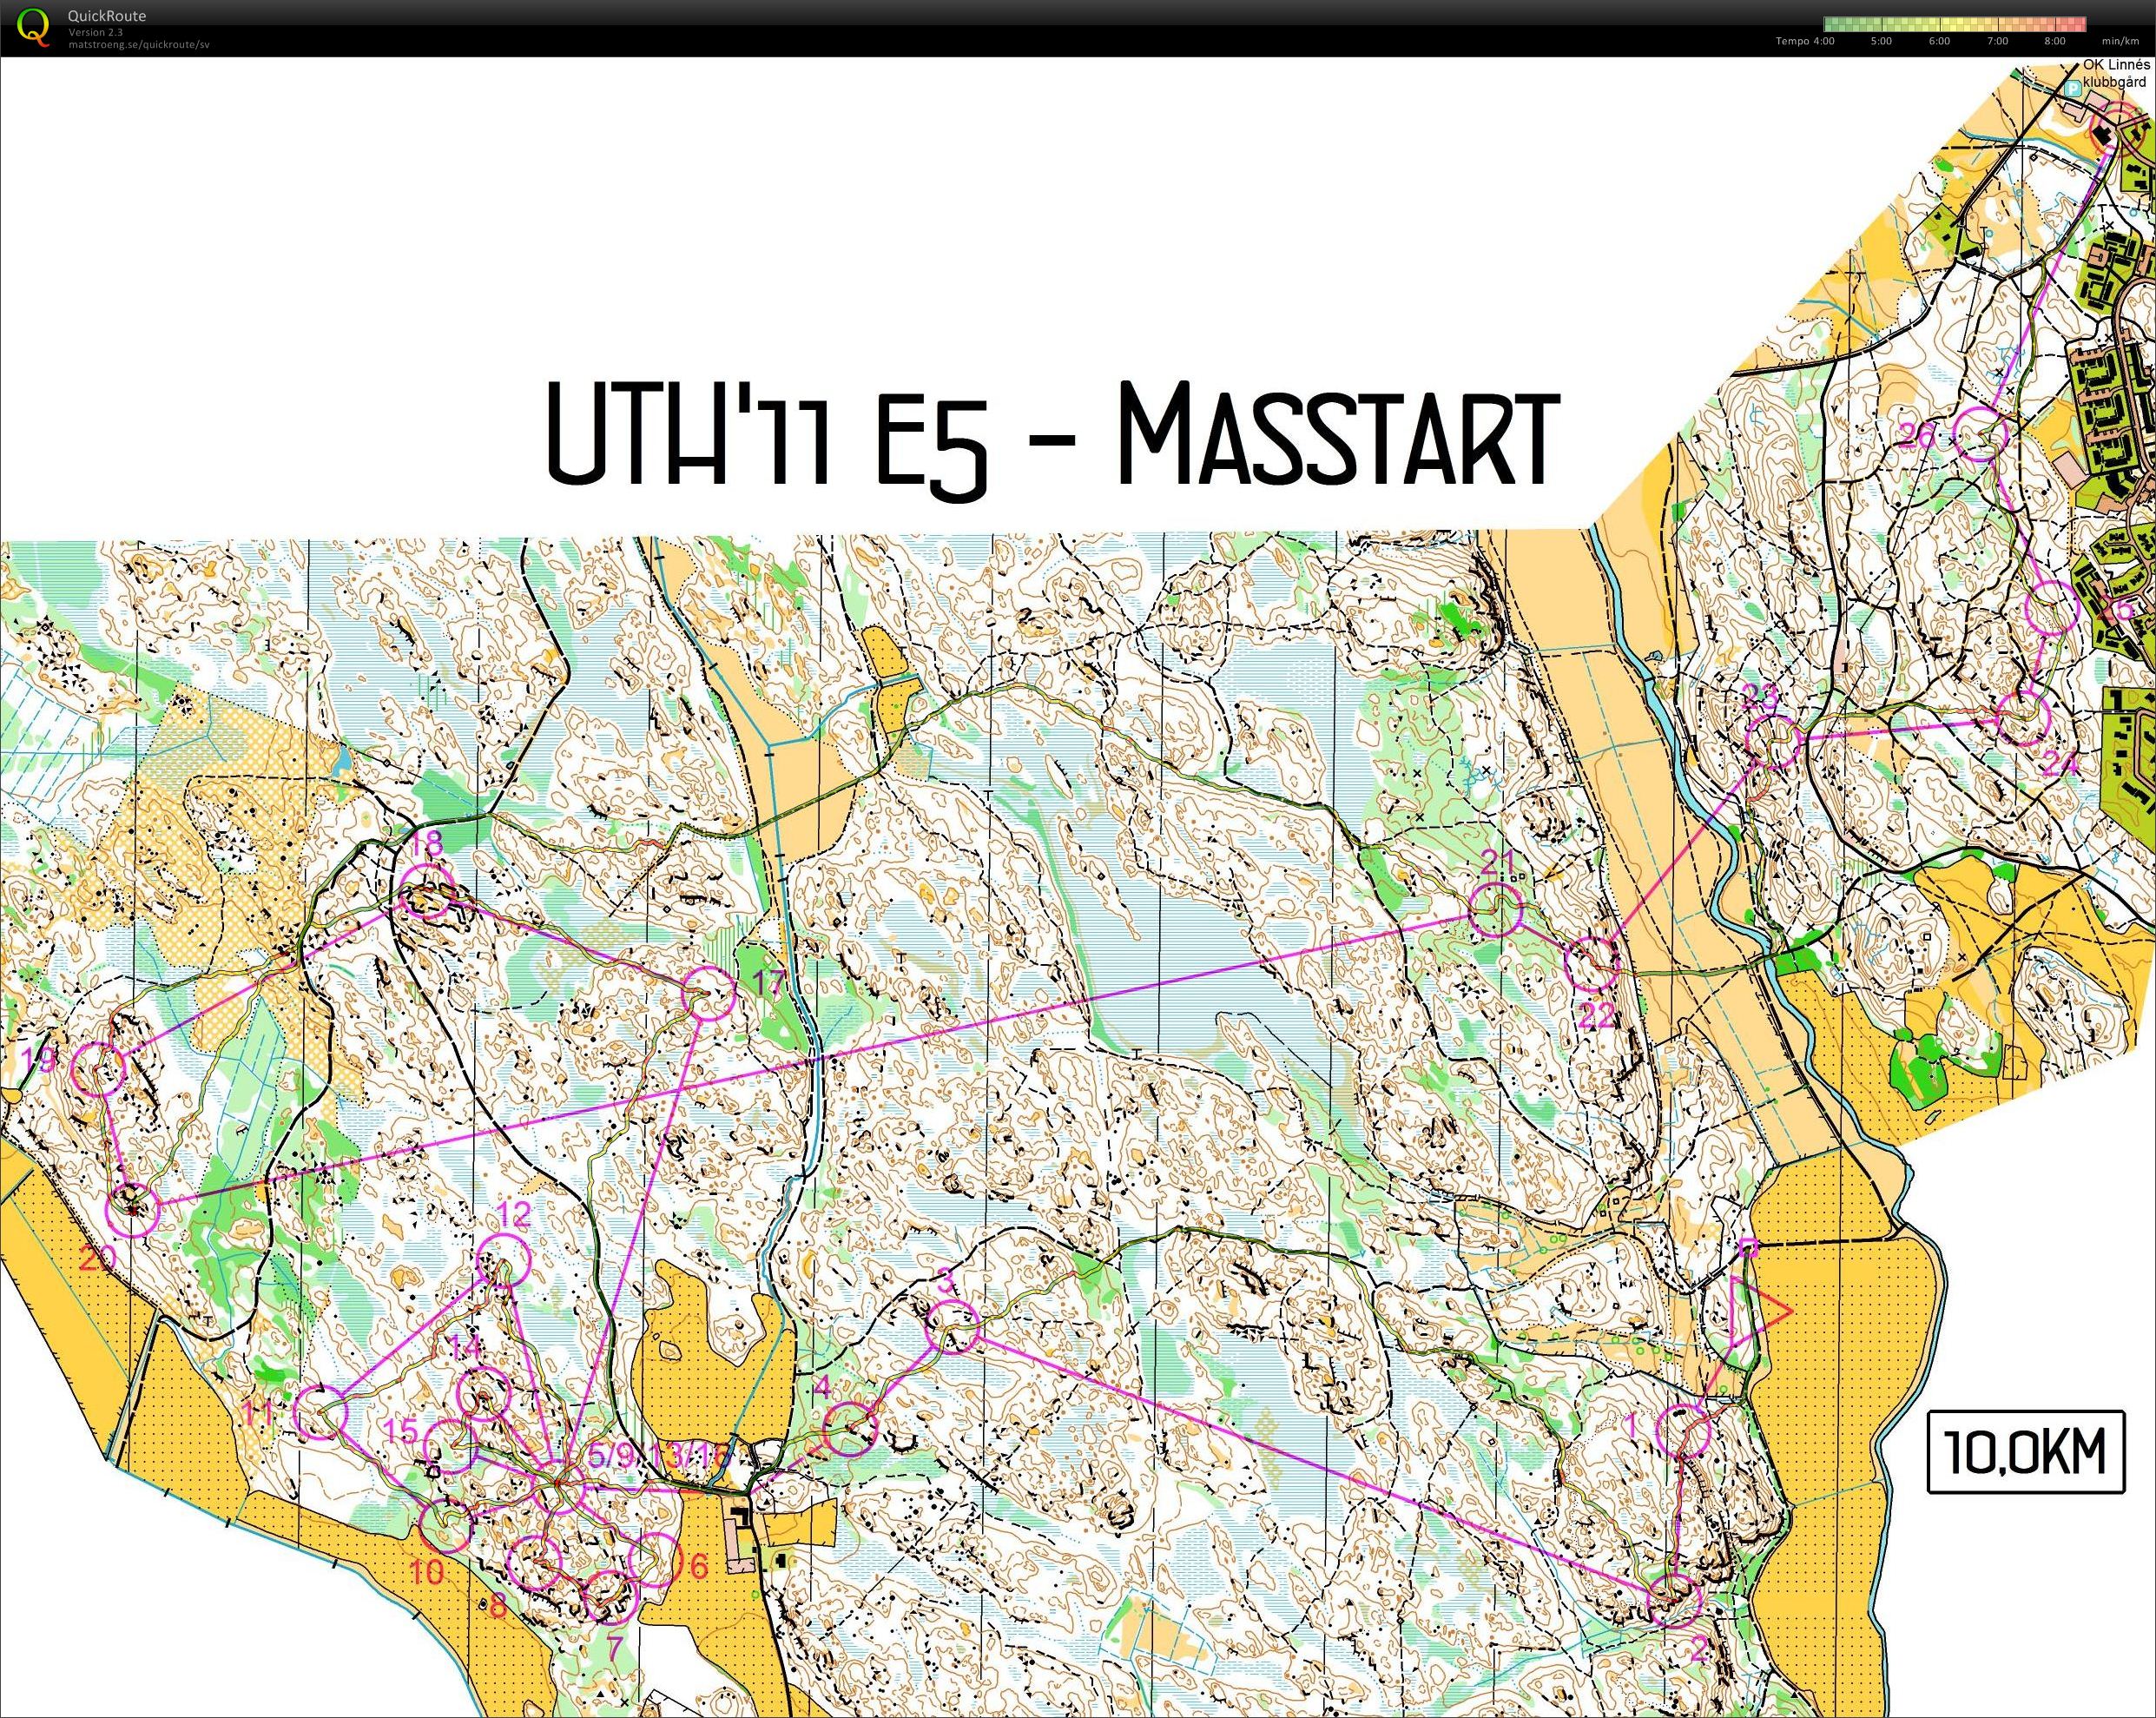 UTH E5 Masstart (11.12.2011)